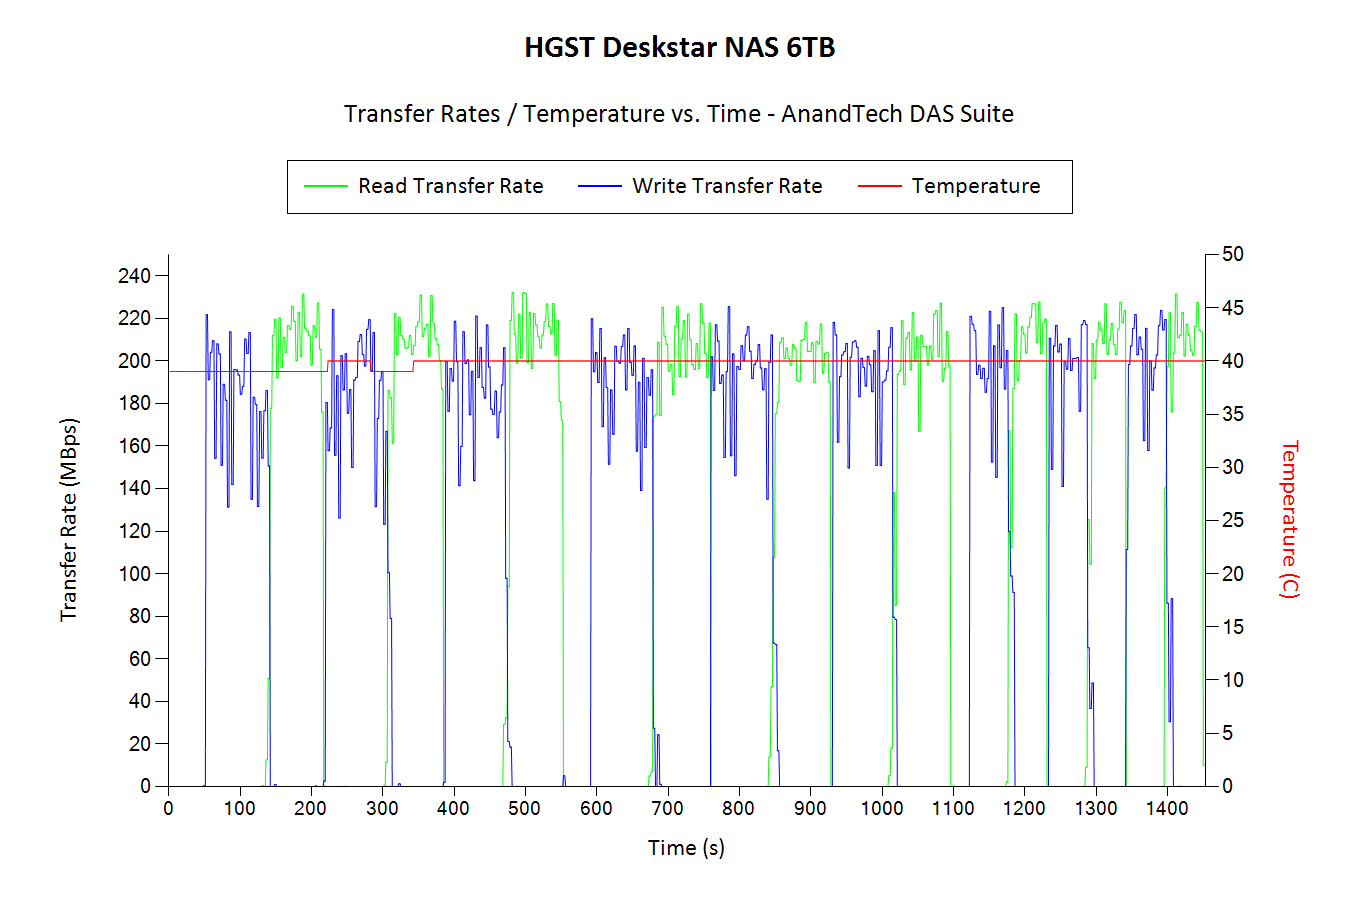 HGST Deskstar NAS Performance Consistency